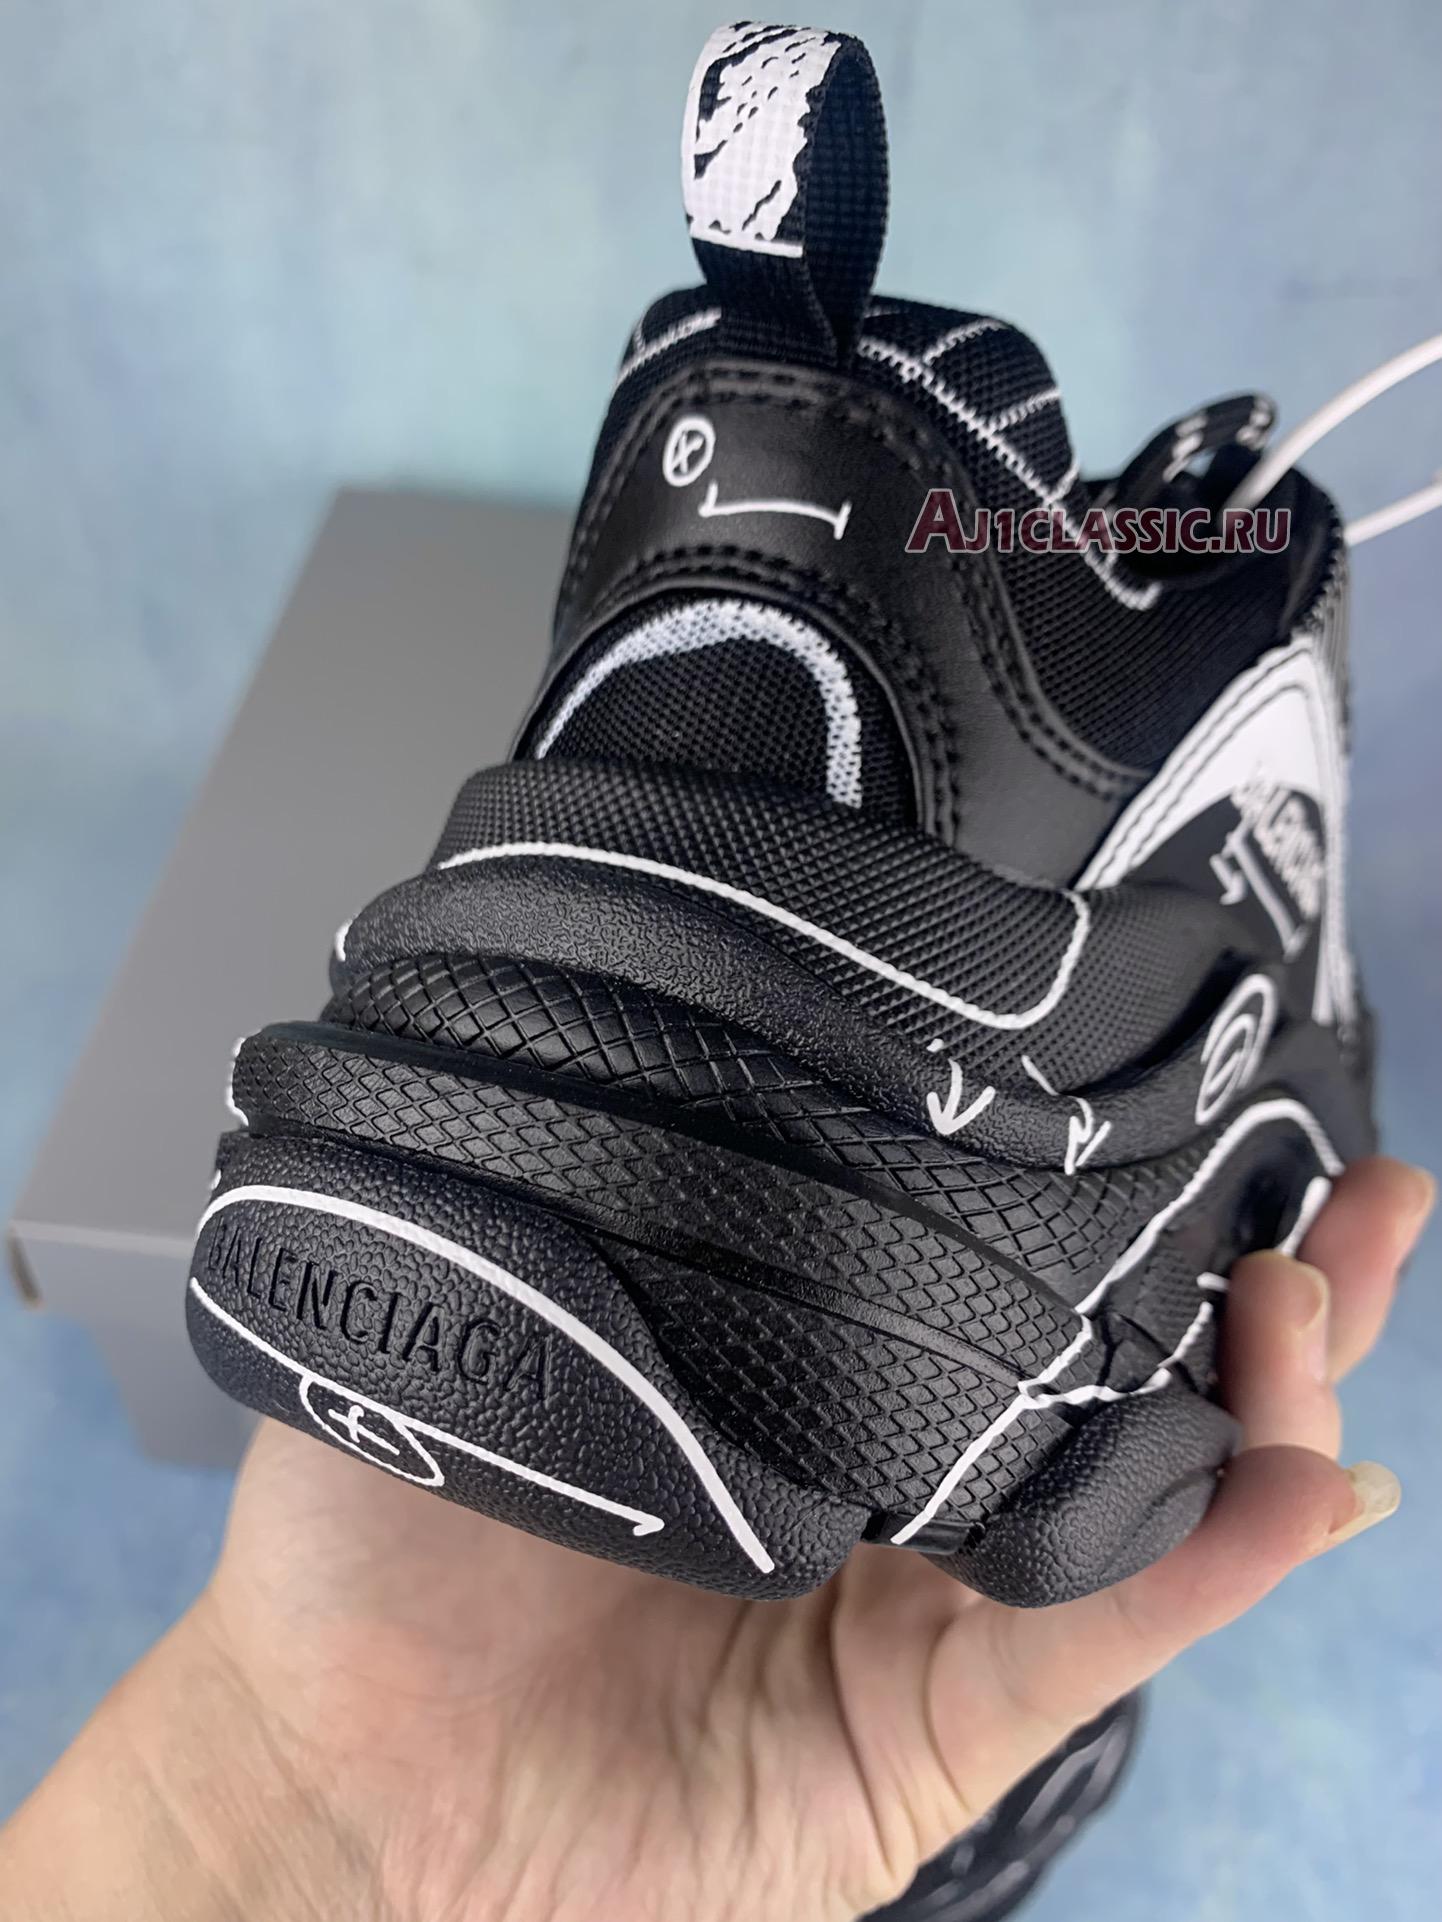 Balenciaga Triple S Sketch-Print Sneakers "Black" 536737 W3SRB 1090